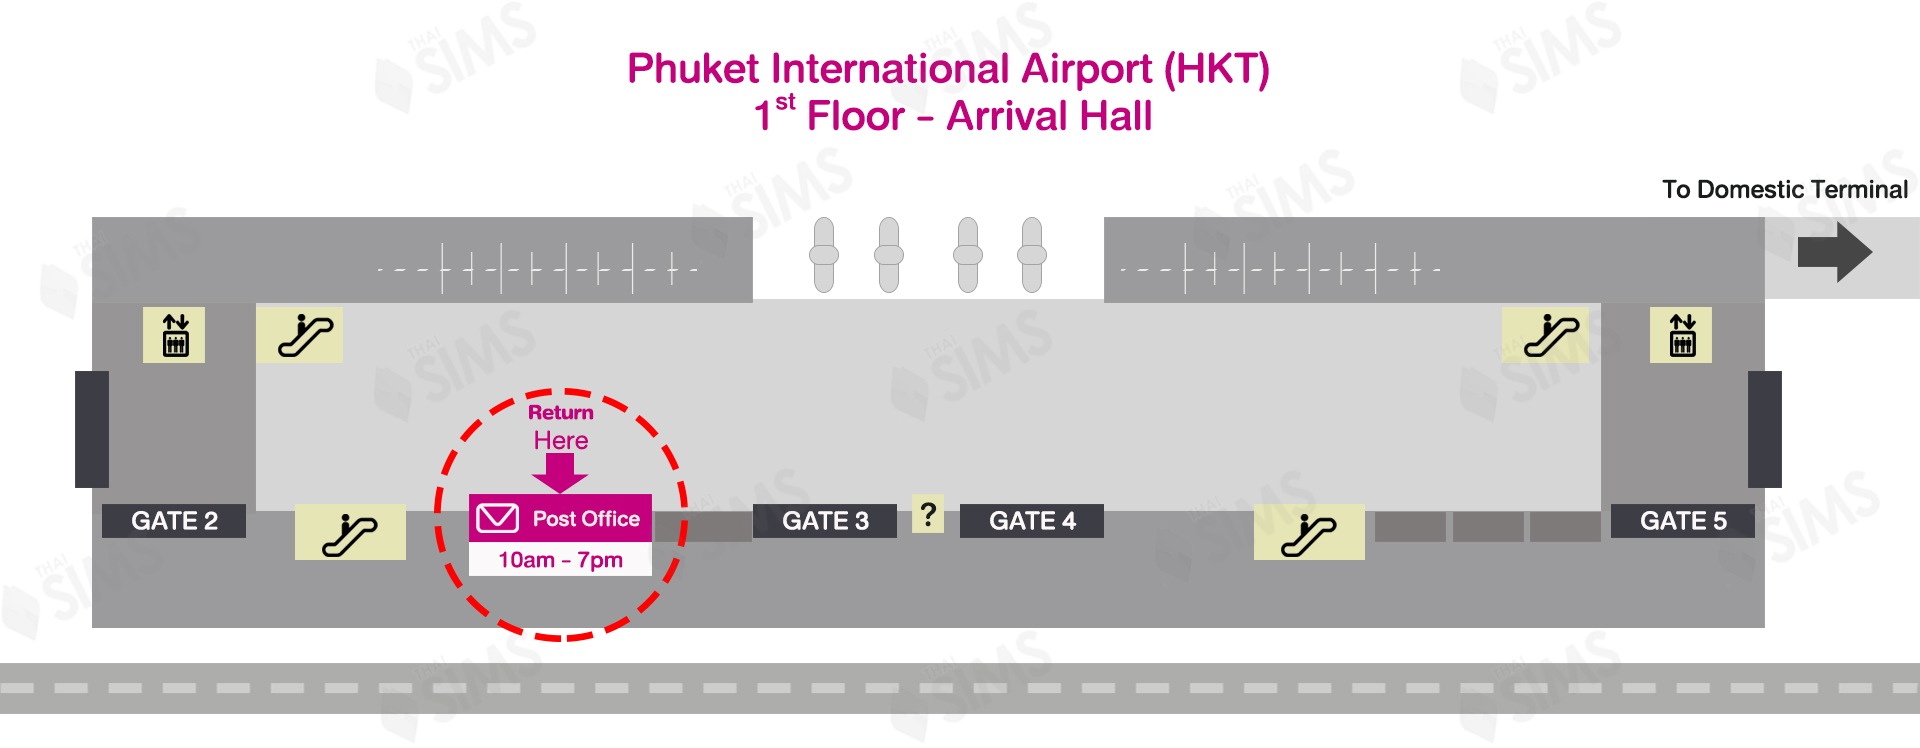 Phuket (HKT) Airport Post Office ThaiSims Pocket WiFi for Return